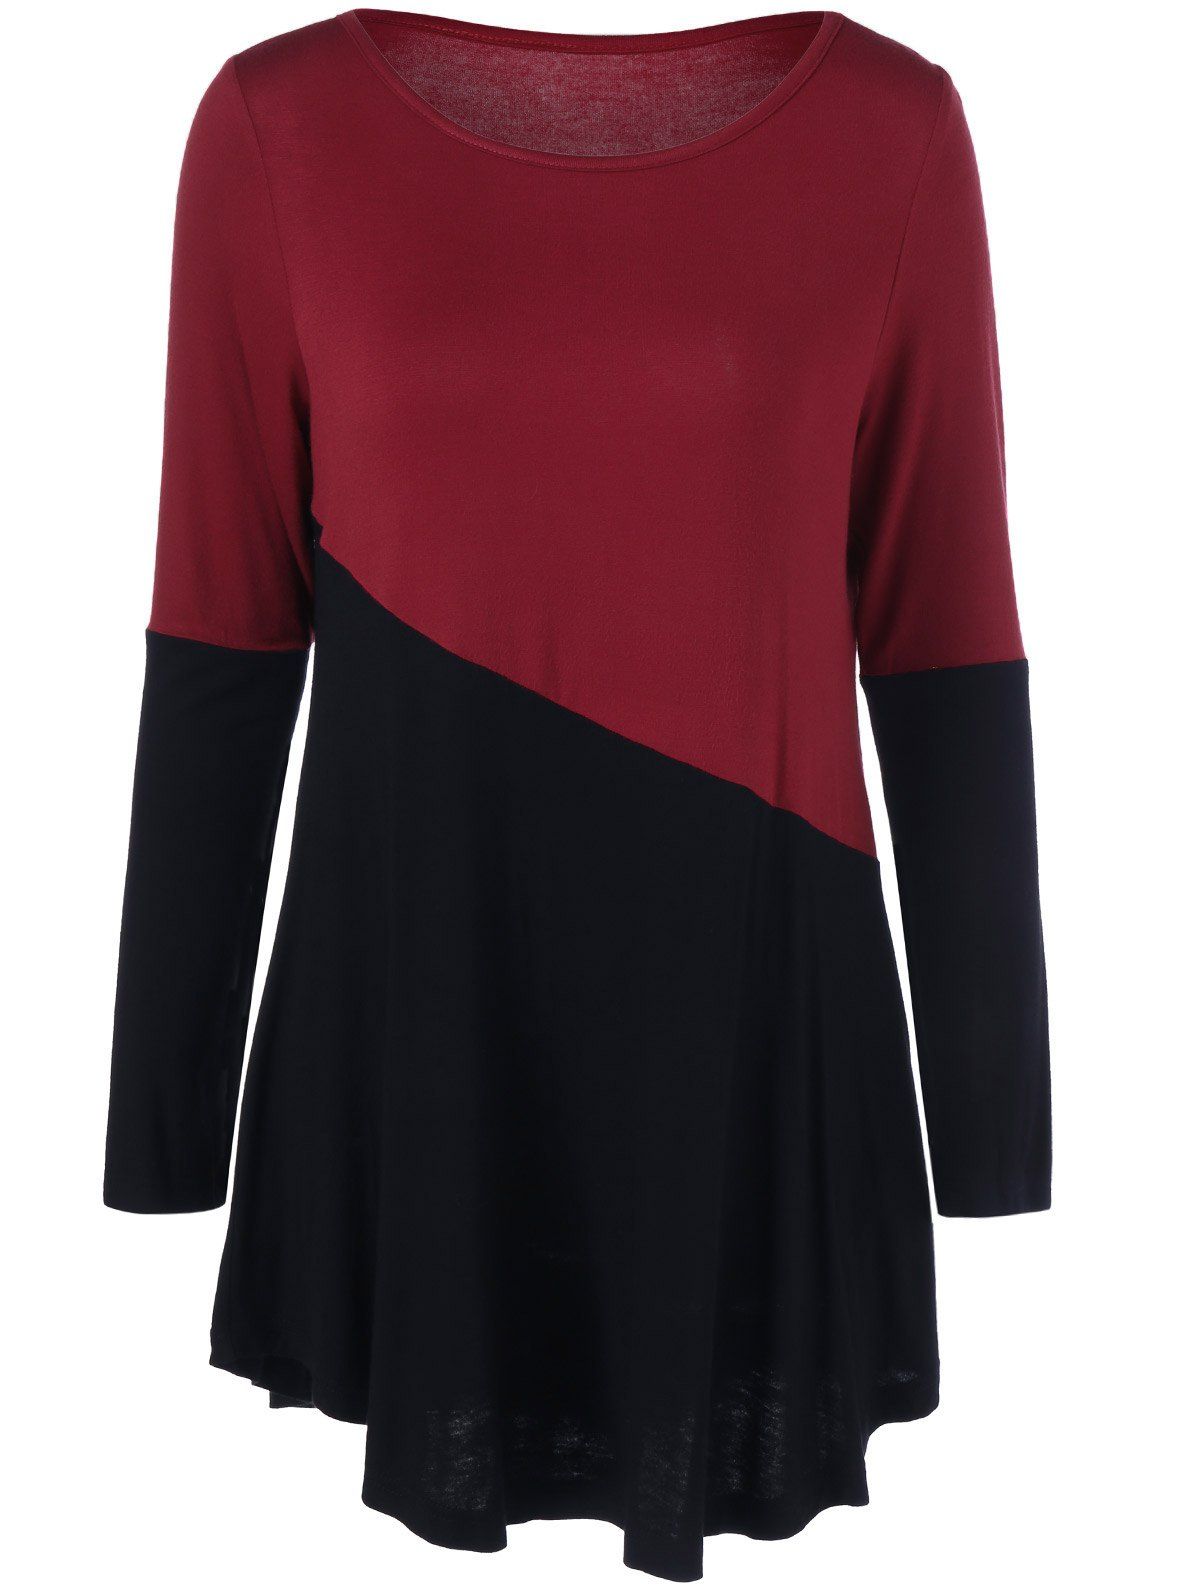 [41% OFF] 2021 Color Block Longline T-Shirt In RED/BLACK | DressLily